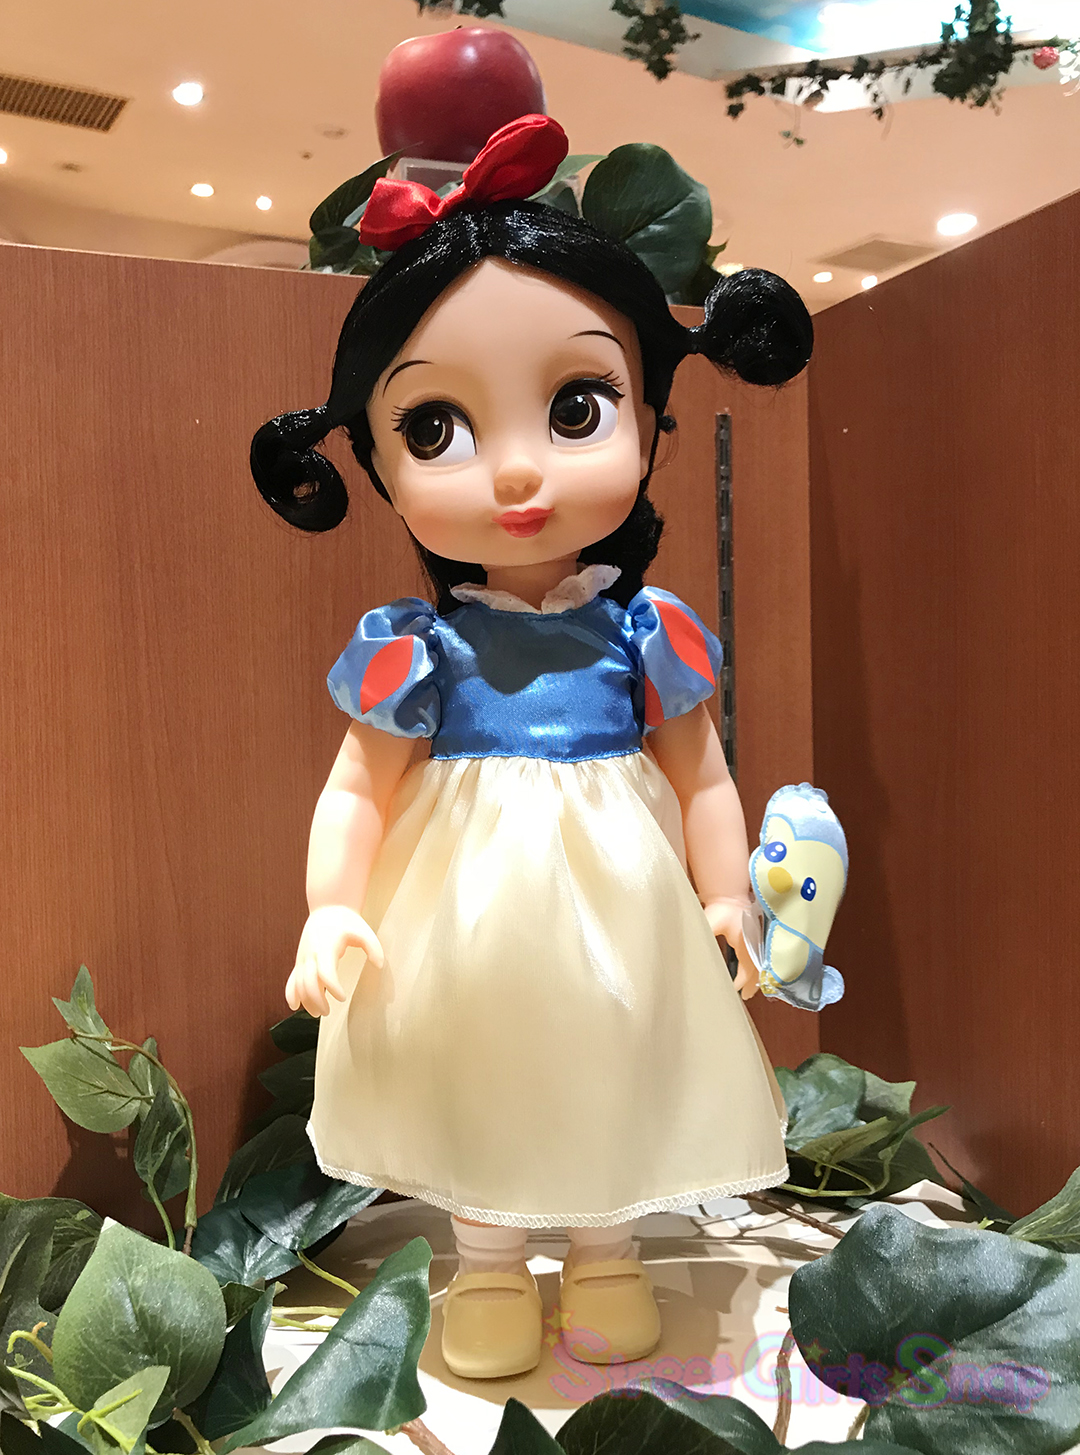 ディズニー映画 白雪姫 の公開80周年を記念したキュートなグッズがディズニーストアに勢ぞろい 渋谷公園通り店も 白雪姫 仕様にデコレーション 画像31 Sgs109